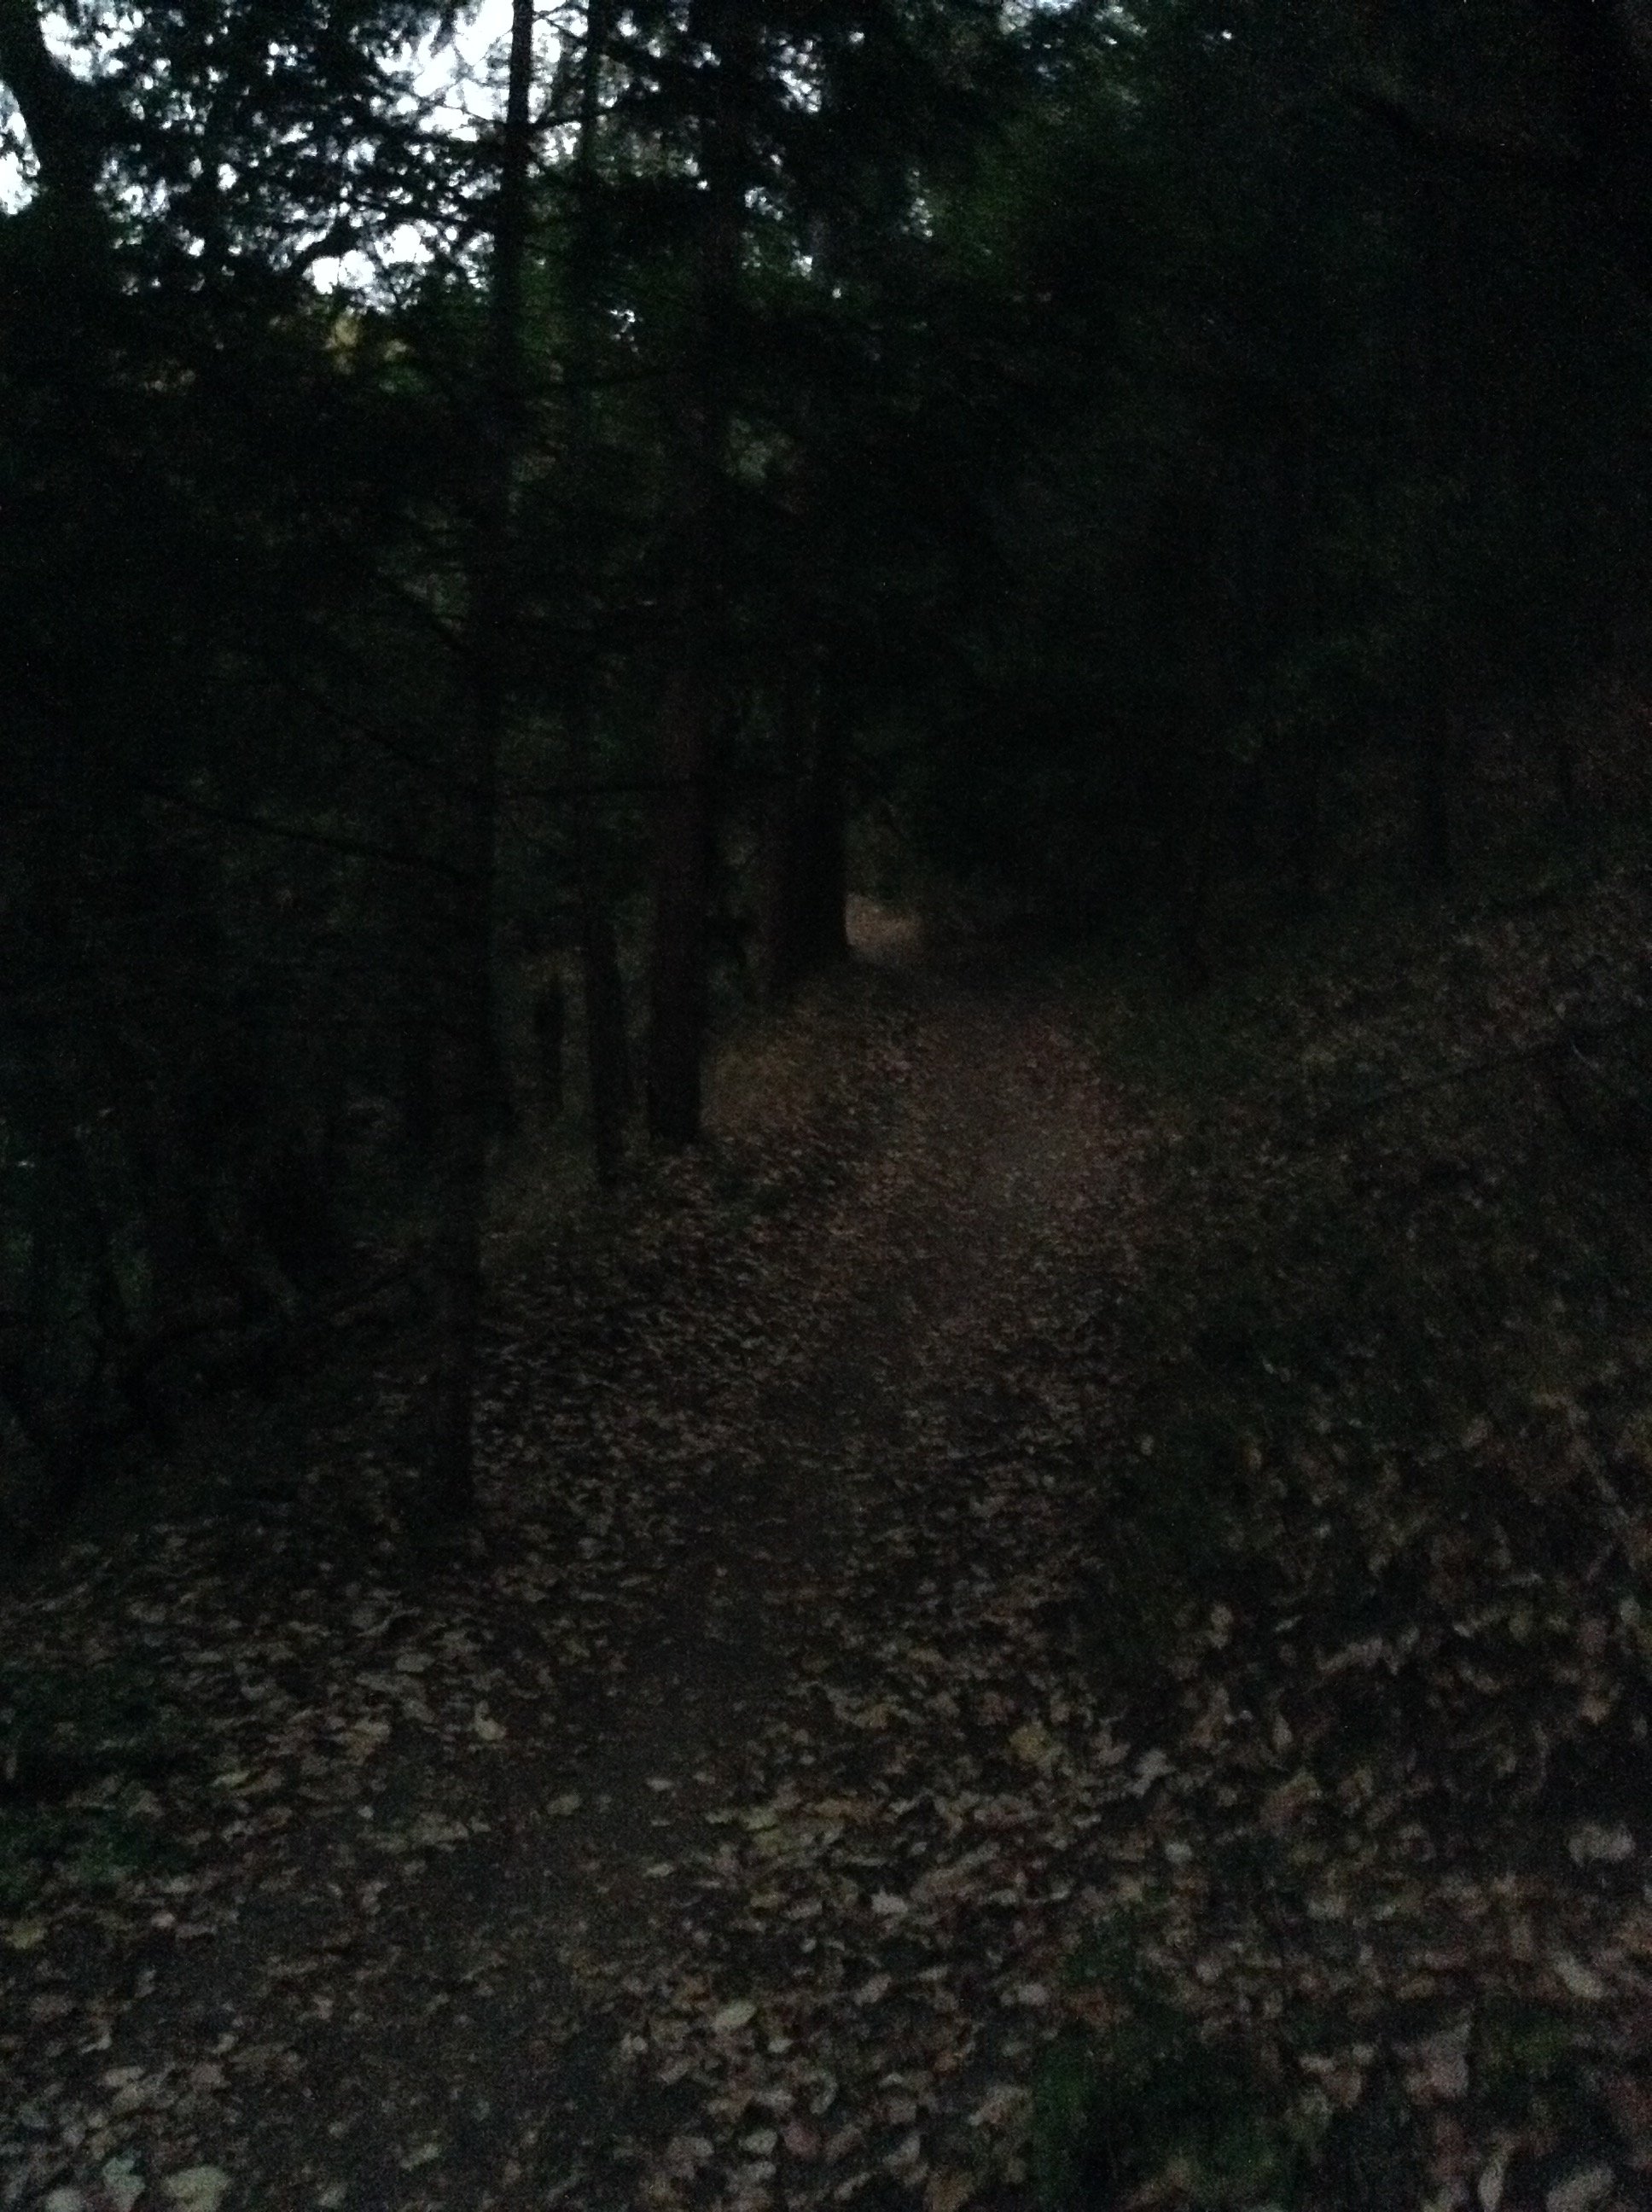 manzanita forest path.JPG